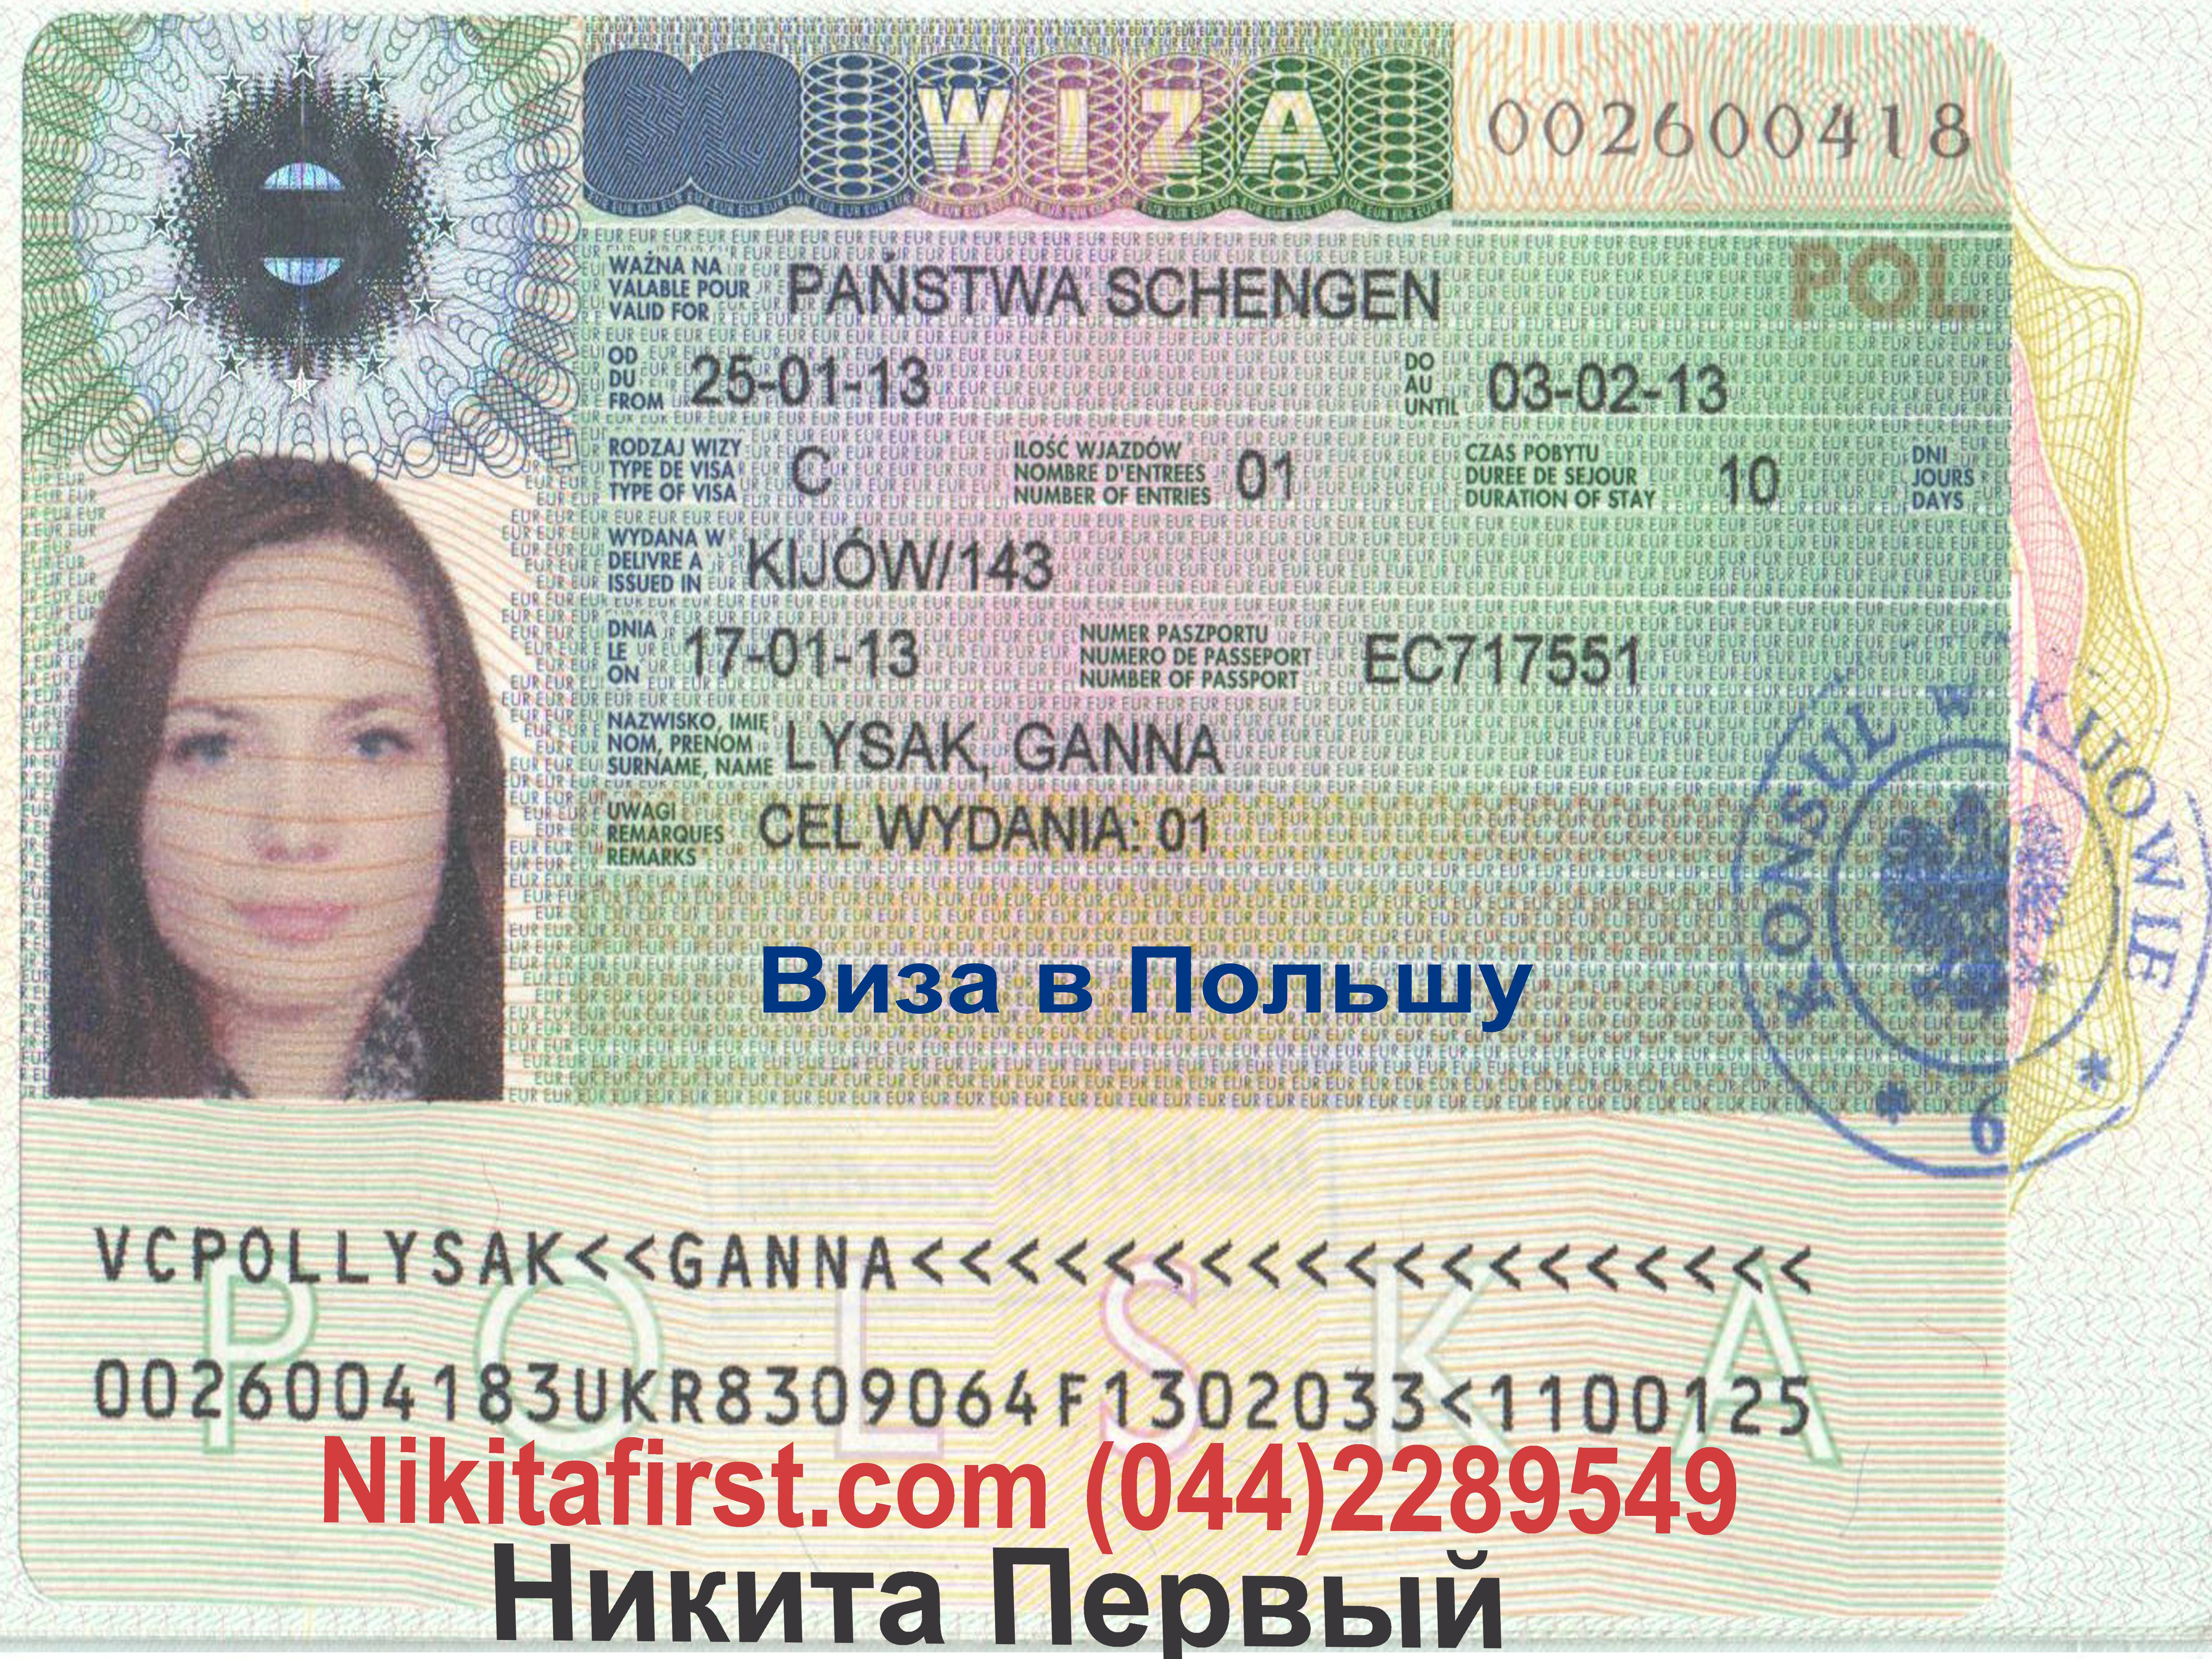 Нужна ли виза в польшу для россиян 2021? да, как получить?